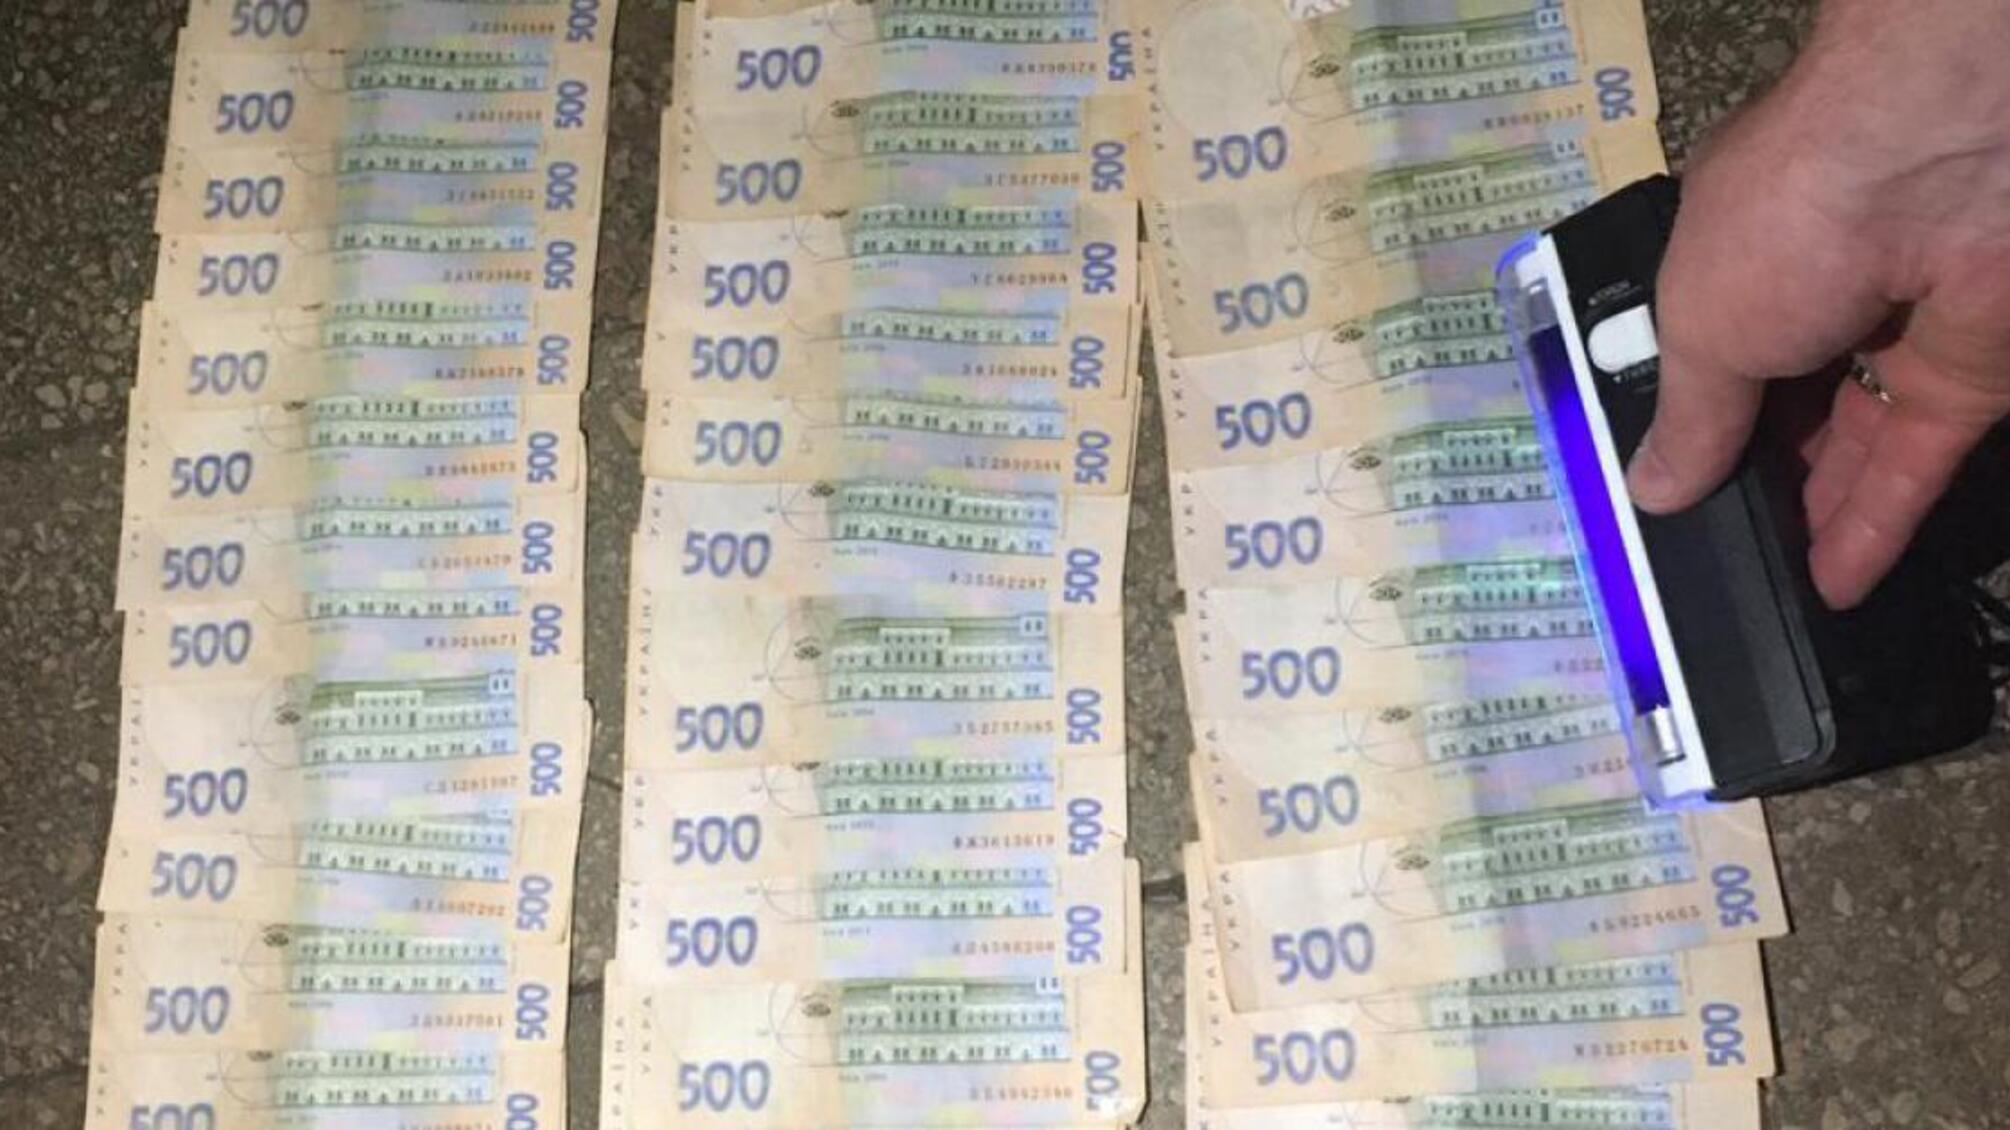 21 тисяч гривень хабара за повернення незаконно вилученого авто - ДБР затримало інспектора патрульної поліції